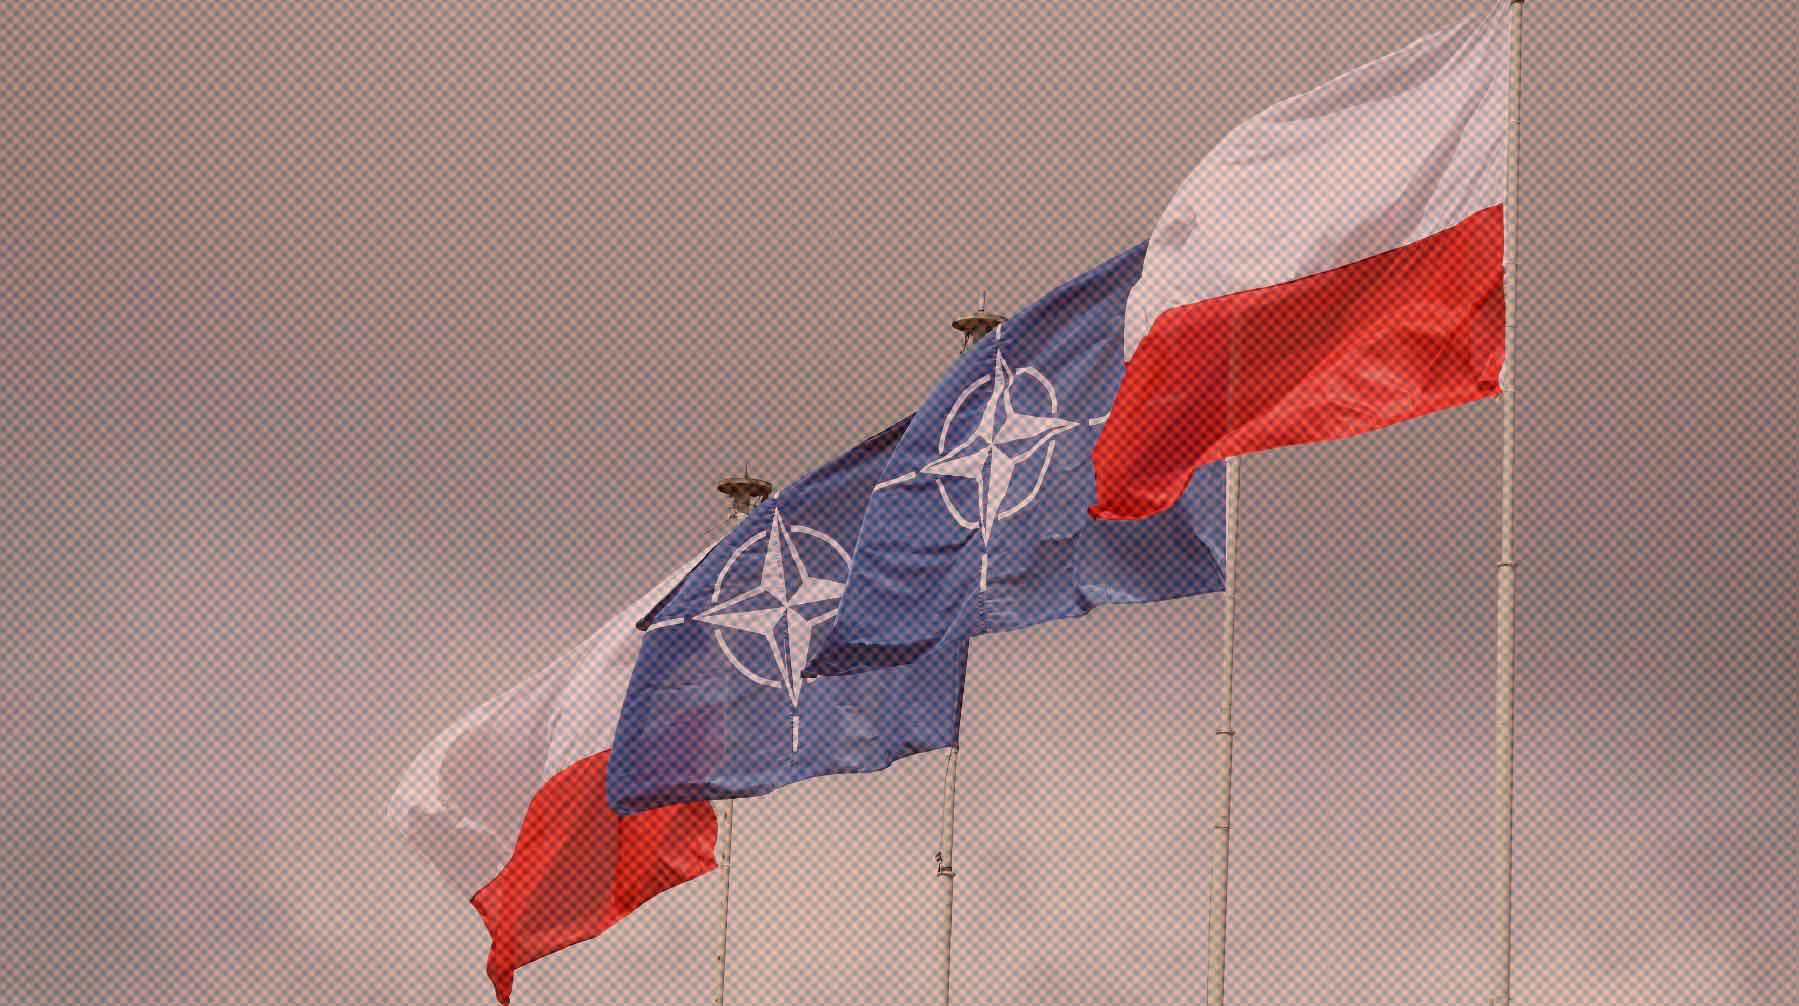 Dailystorm - Власти Польши инициировали созыв Совета НАТО после инцидента с ракетой